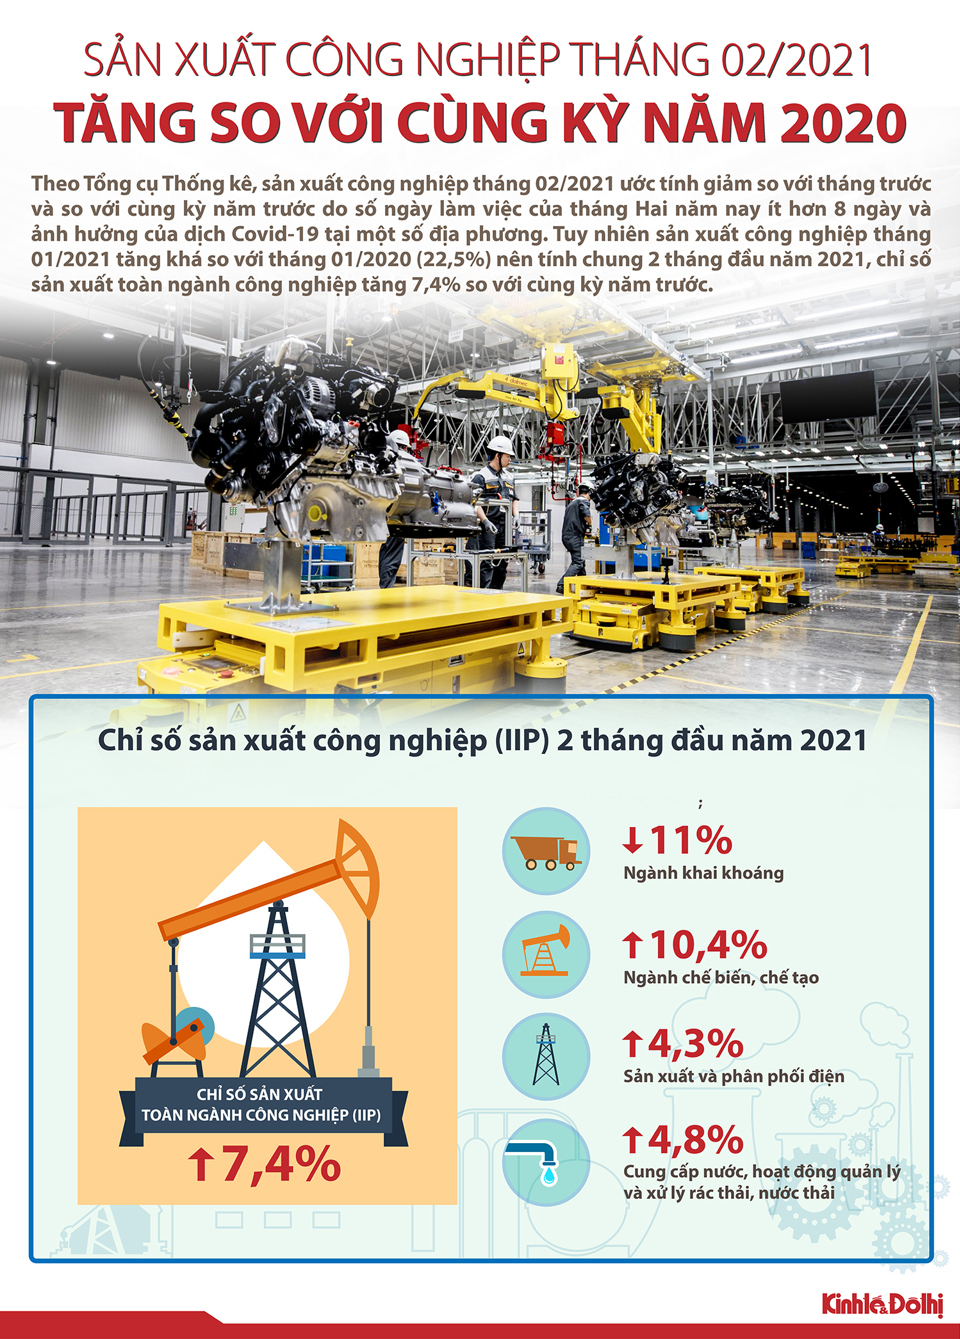 [Infographic] 2 tháng năm 2021, chỉ số sản xuất toàn ngành công nghiệp tăng 7,4% - Ảnh 1